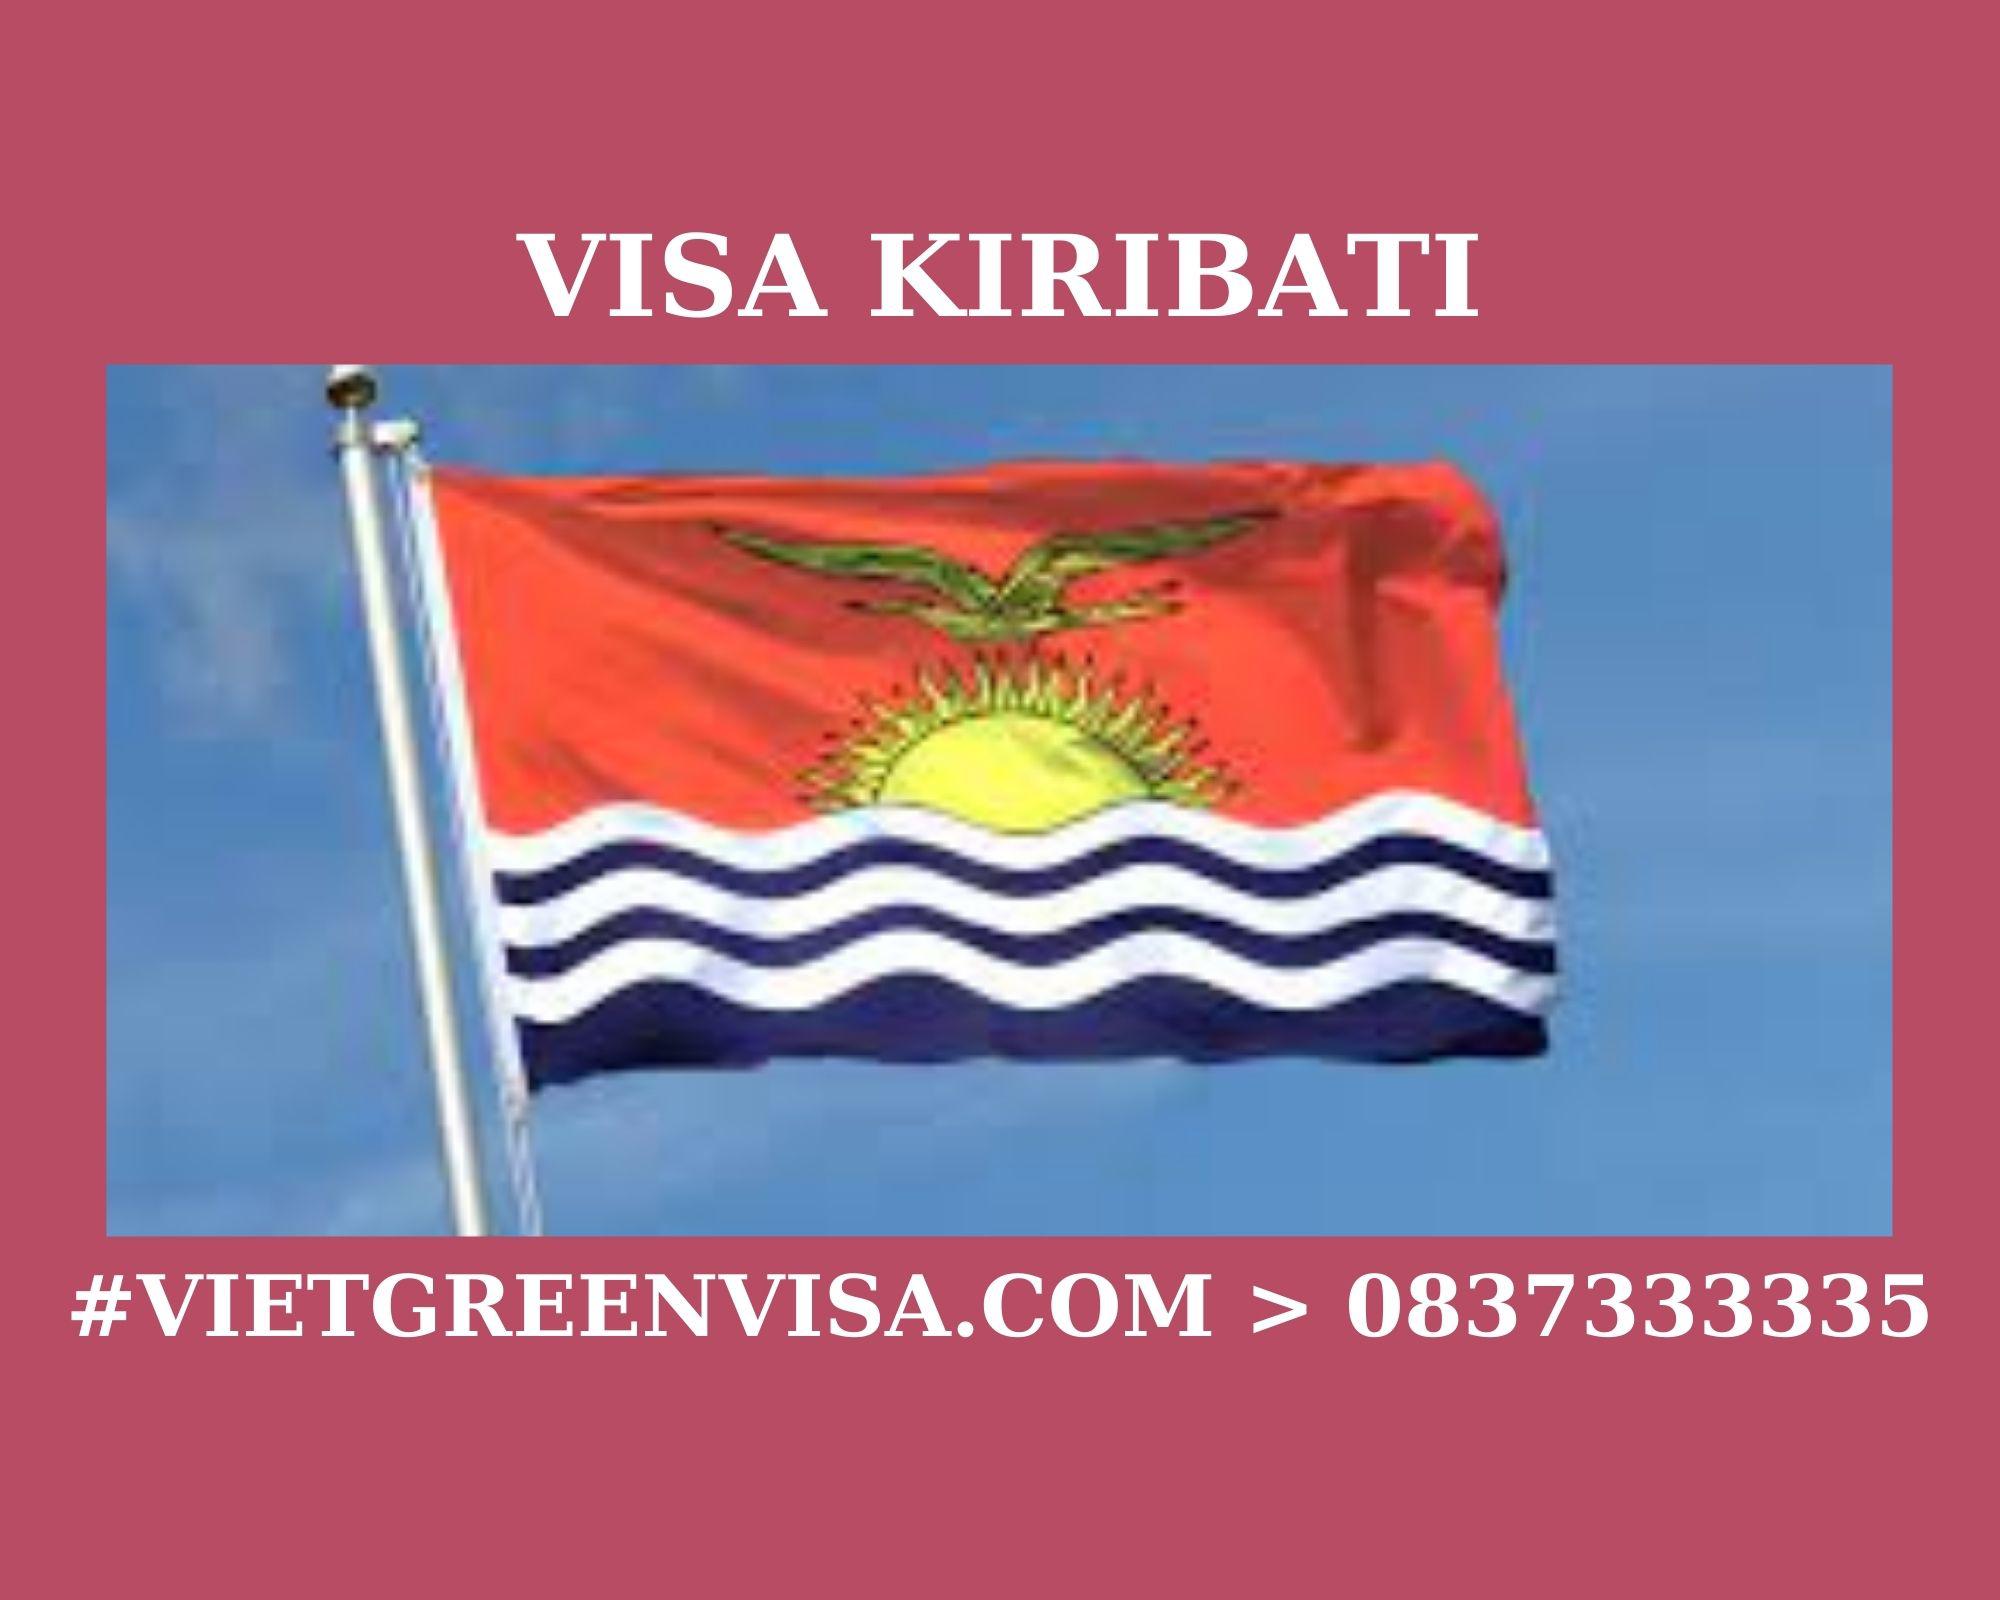 Dịch vụ xin Visa sang Kiribati tổ chức đám cưới, kết hôn